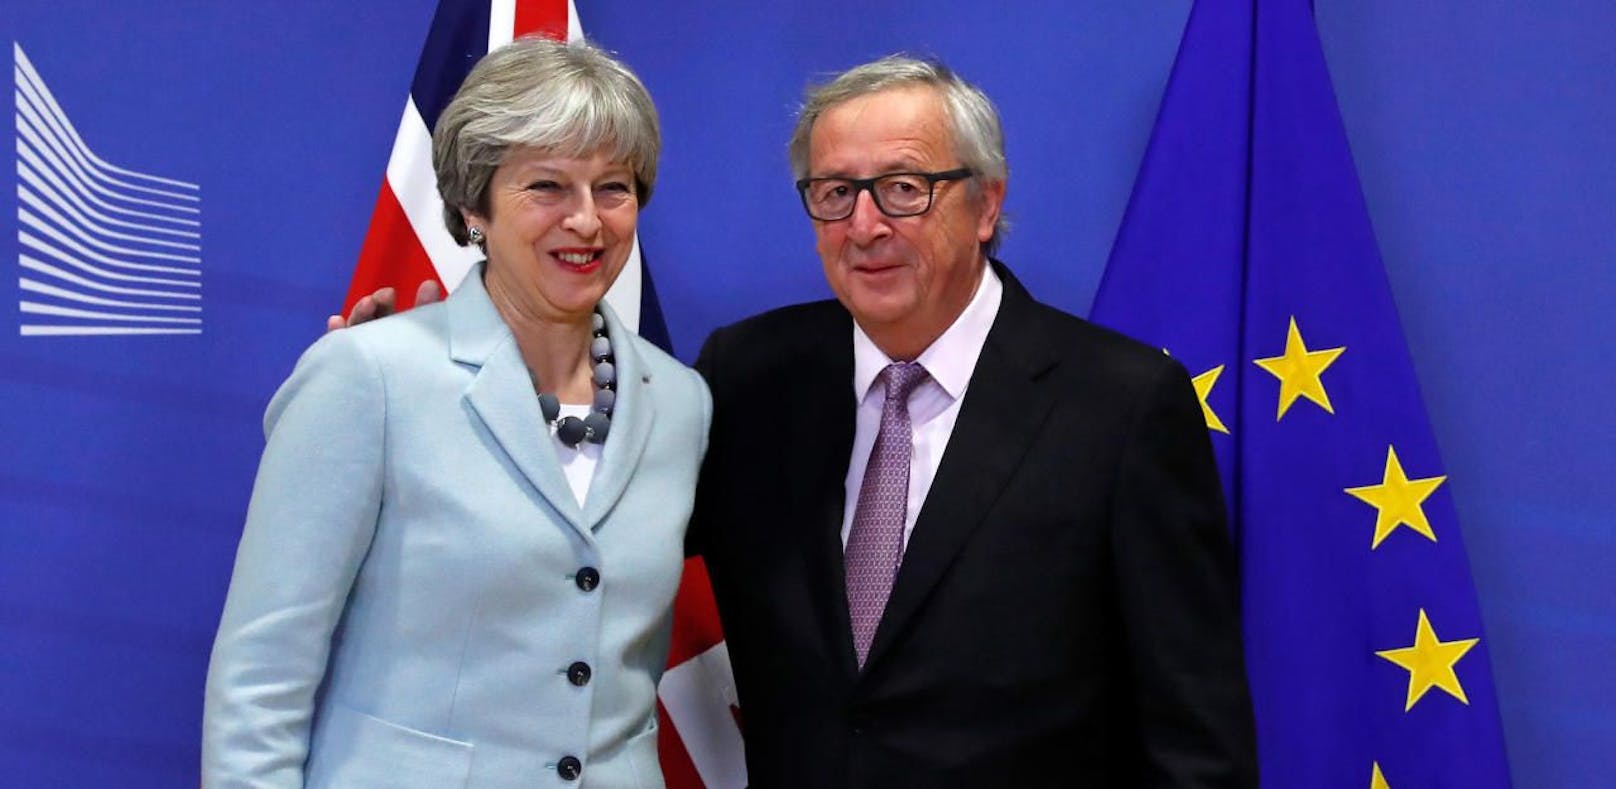 Tusk und Juncker bieten Briten Verbleib in EU an